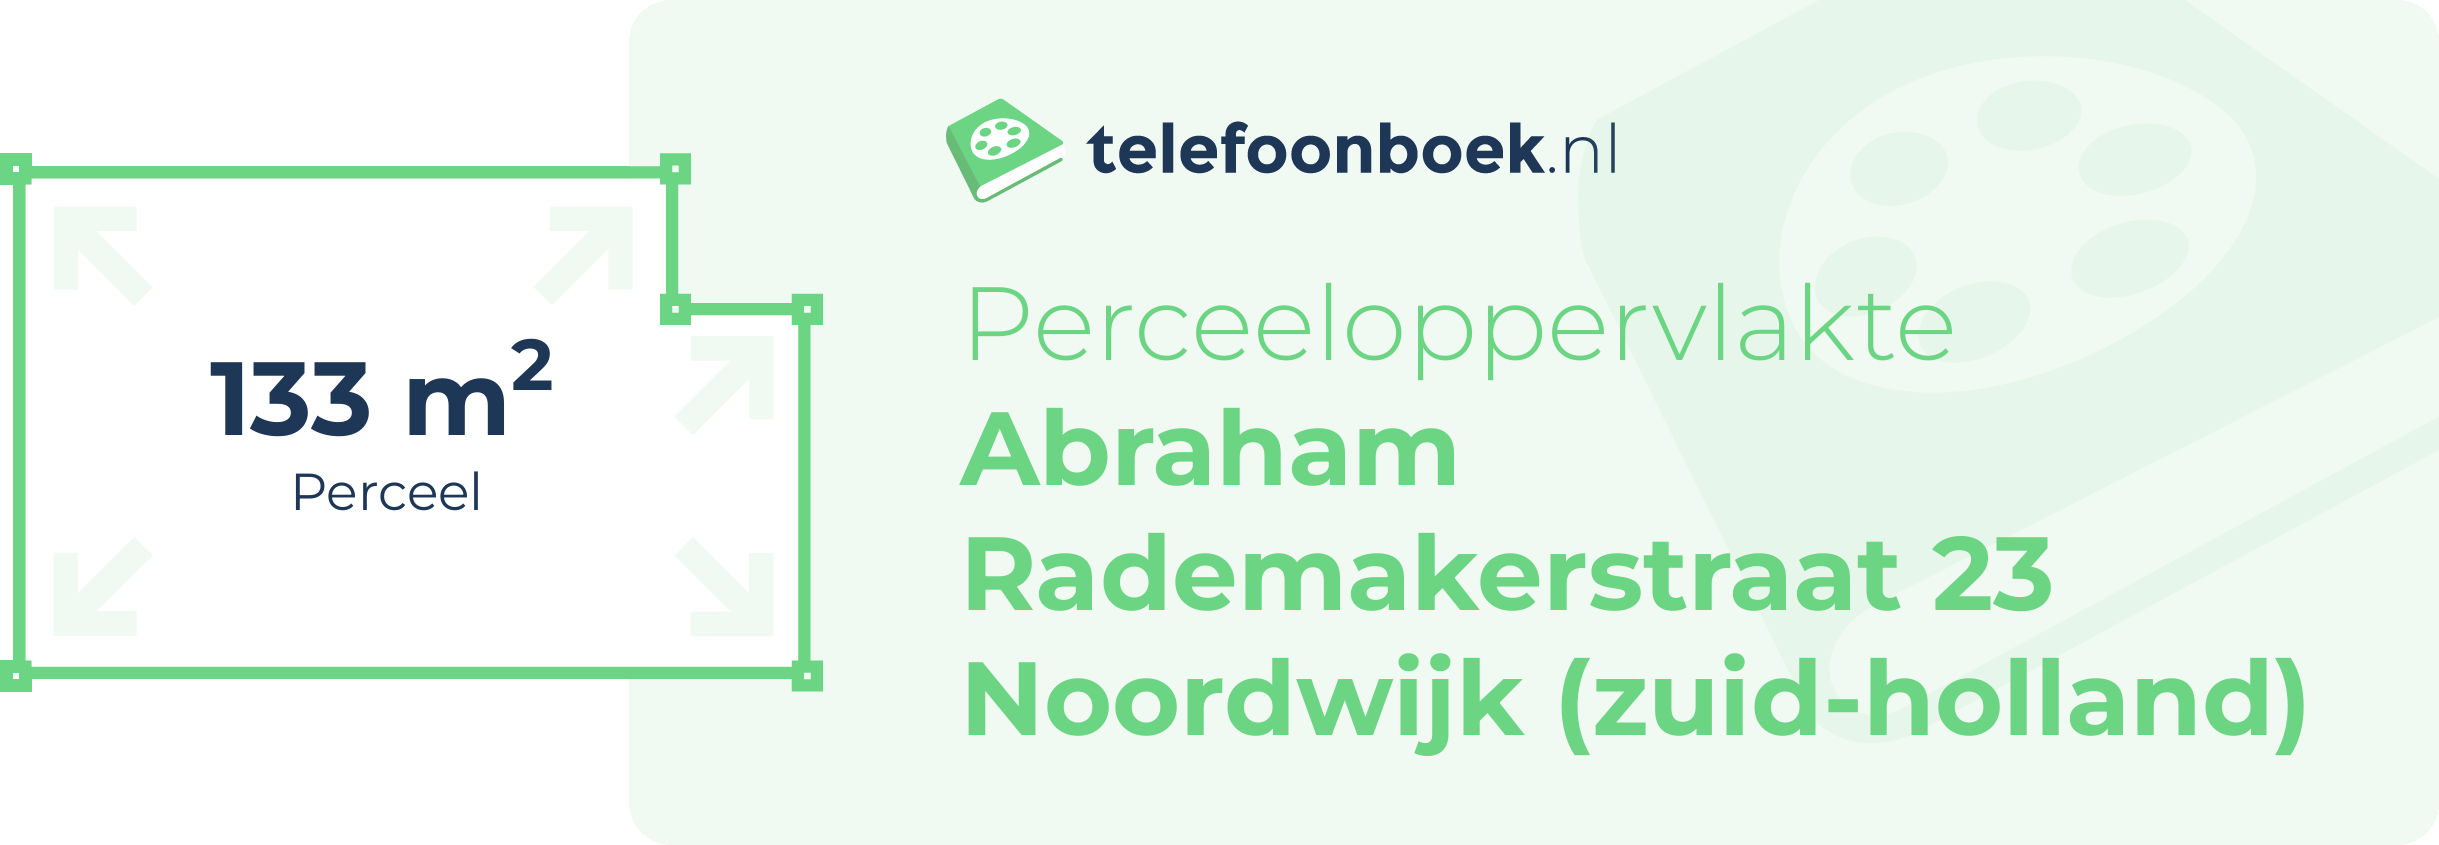 Perceeloppervlakte Abraham Rademakerstraat 23 Noordwijk (Zuid-Holland)